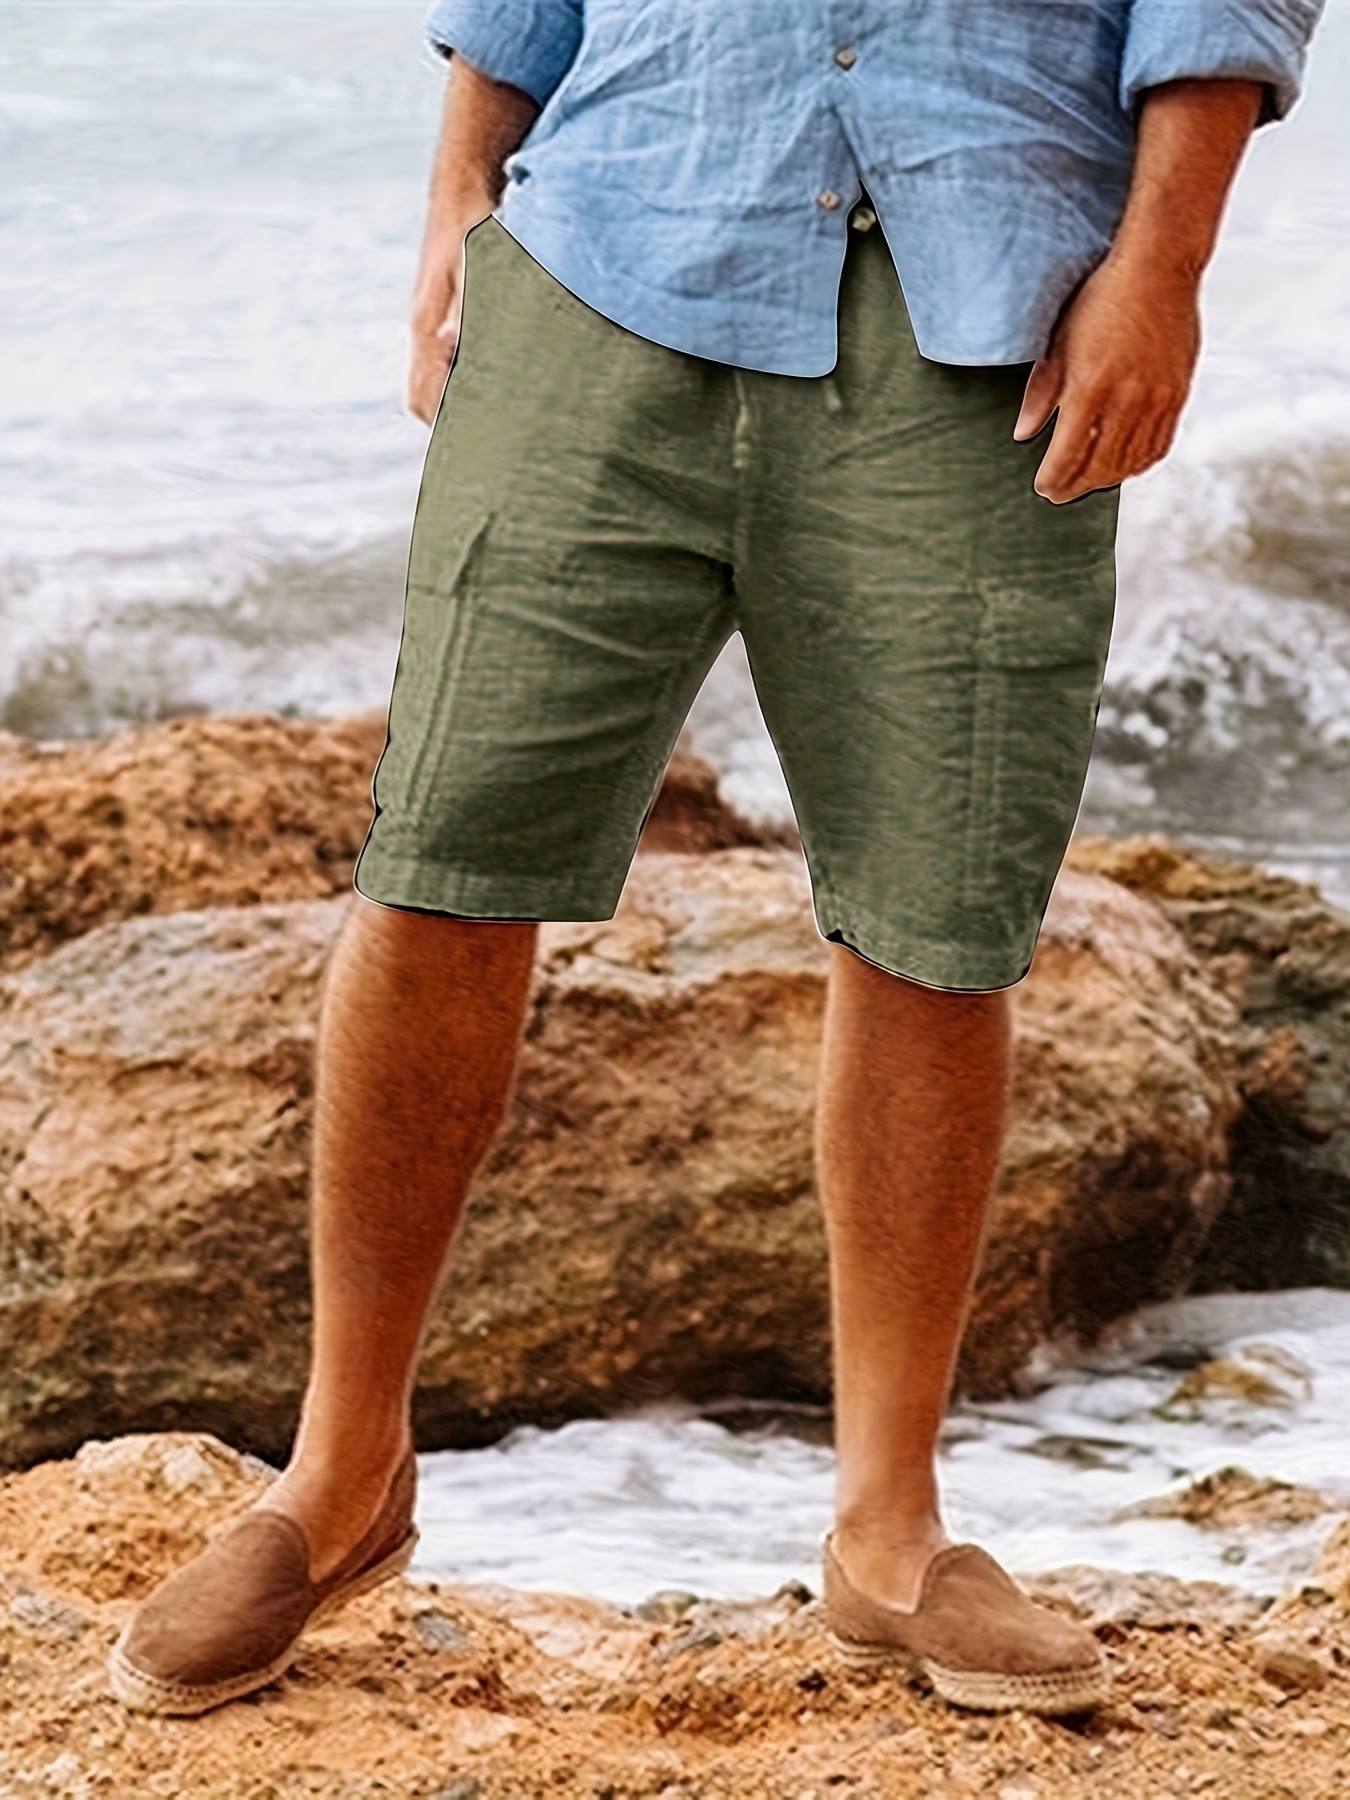 Shorts de plage pour homme avec poches bermuda cargo coton